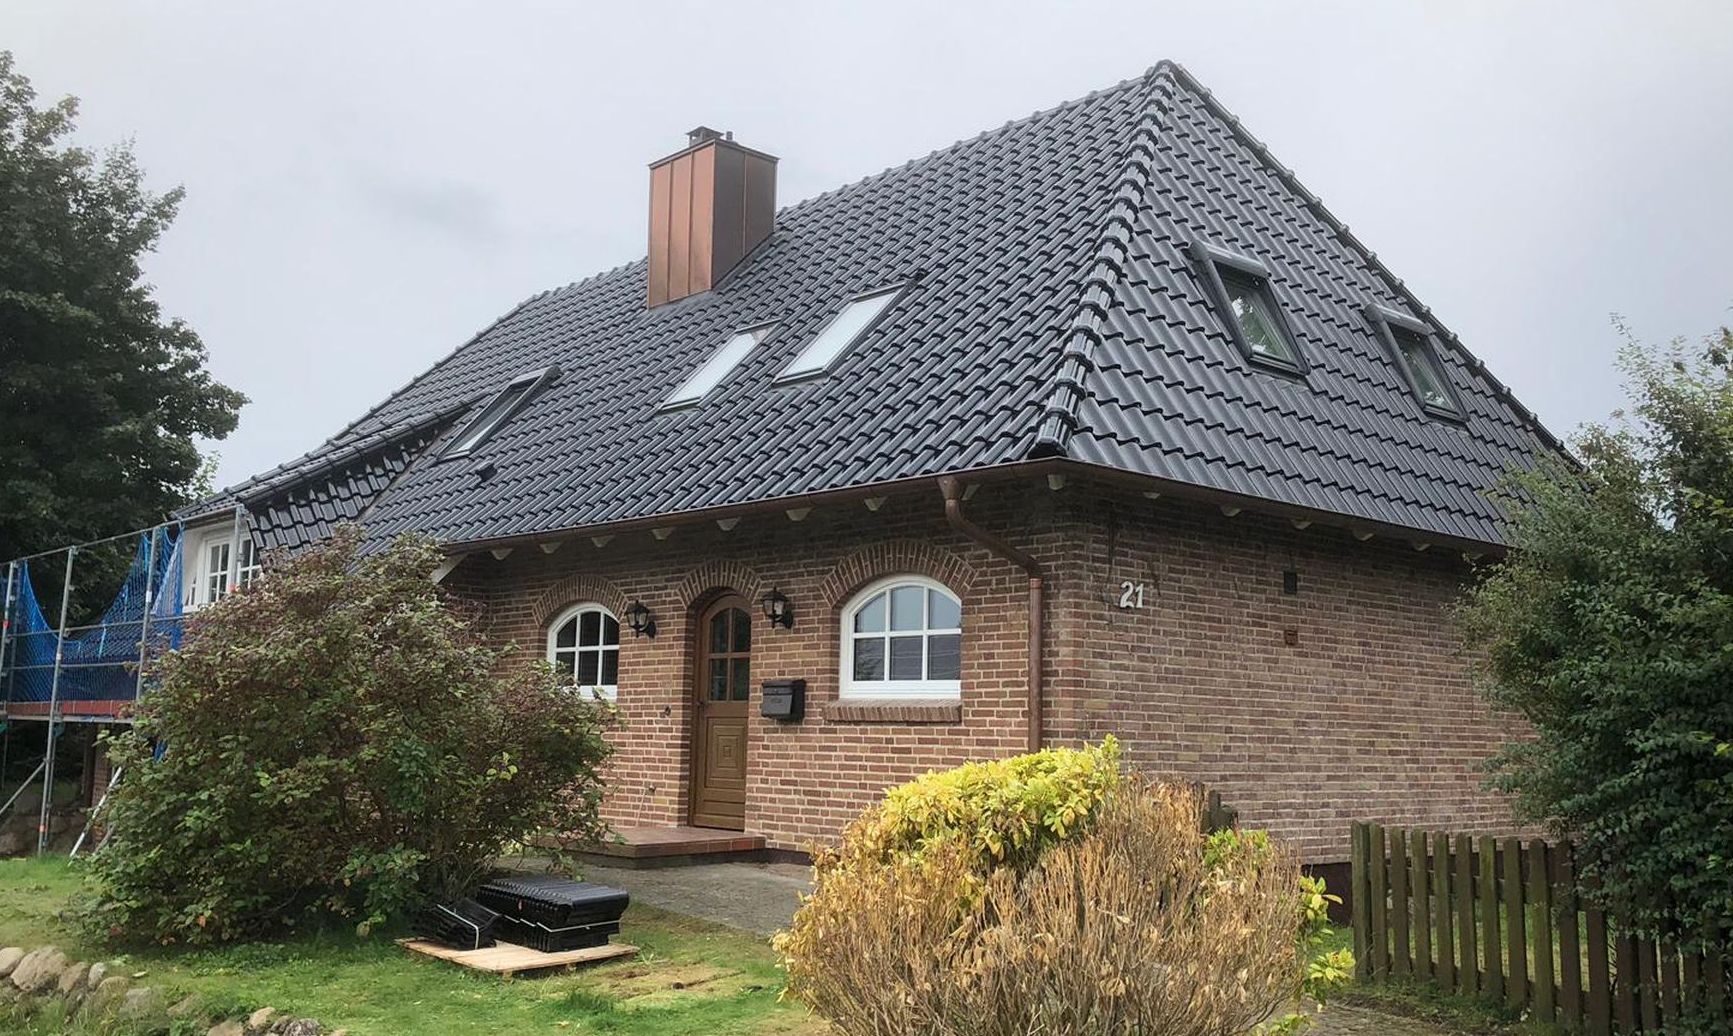 Energetische Dachsanierung mit Tondachziegeln, Kupferdachrinne, Schornsteinverkleidung sowie Veluxfenstern in Süderbrarup.